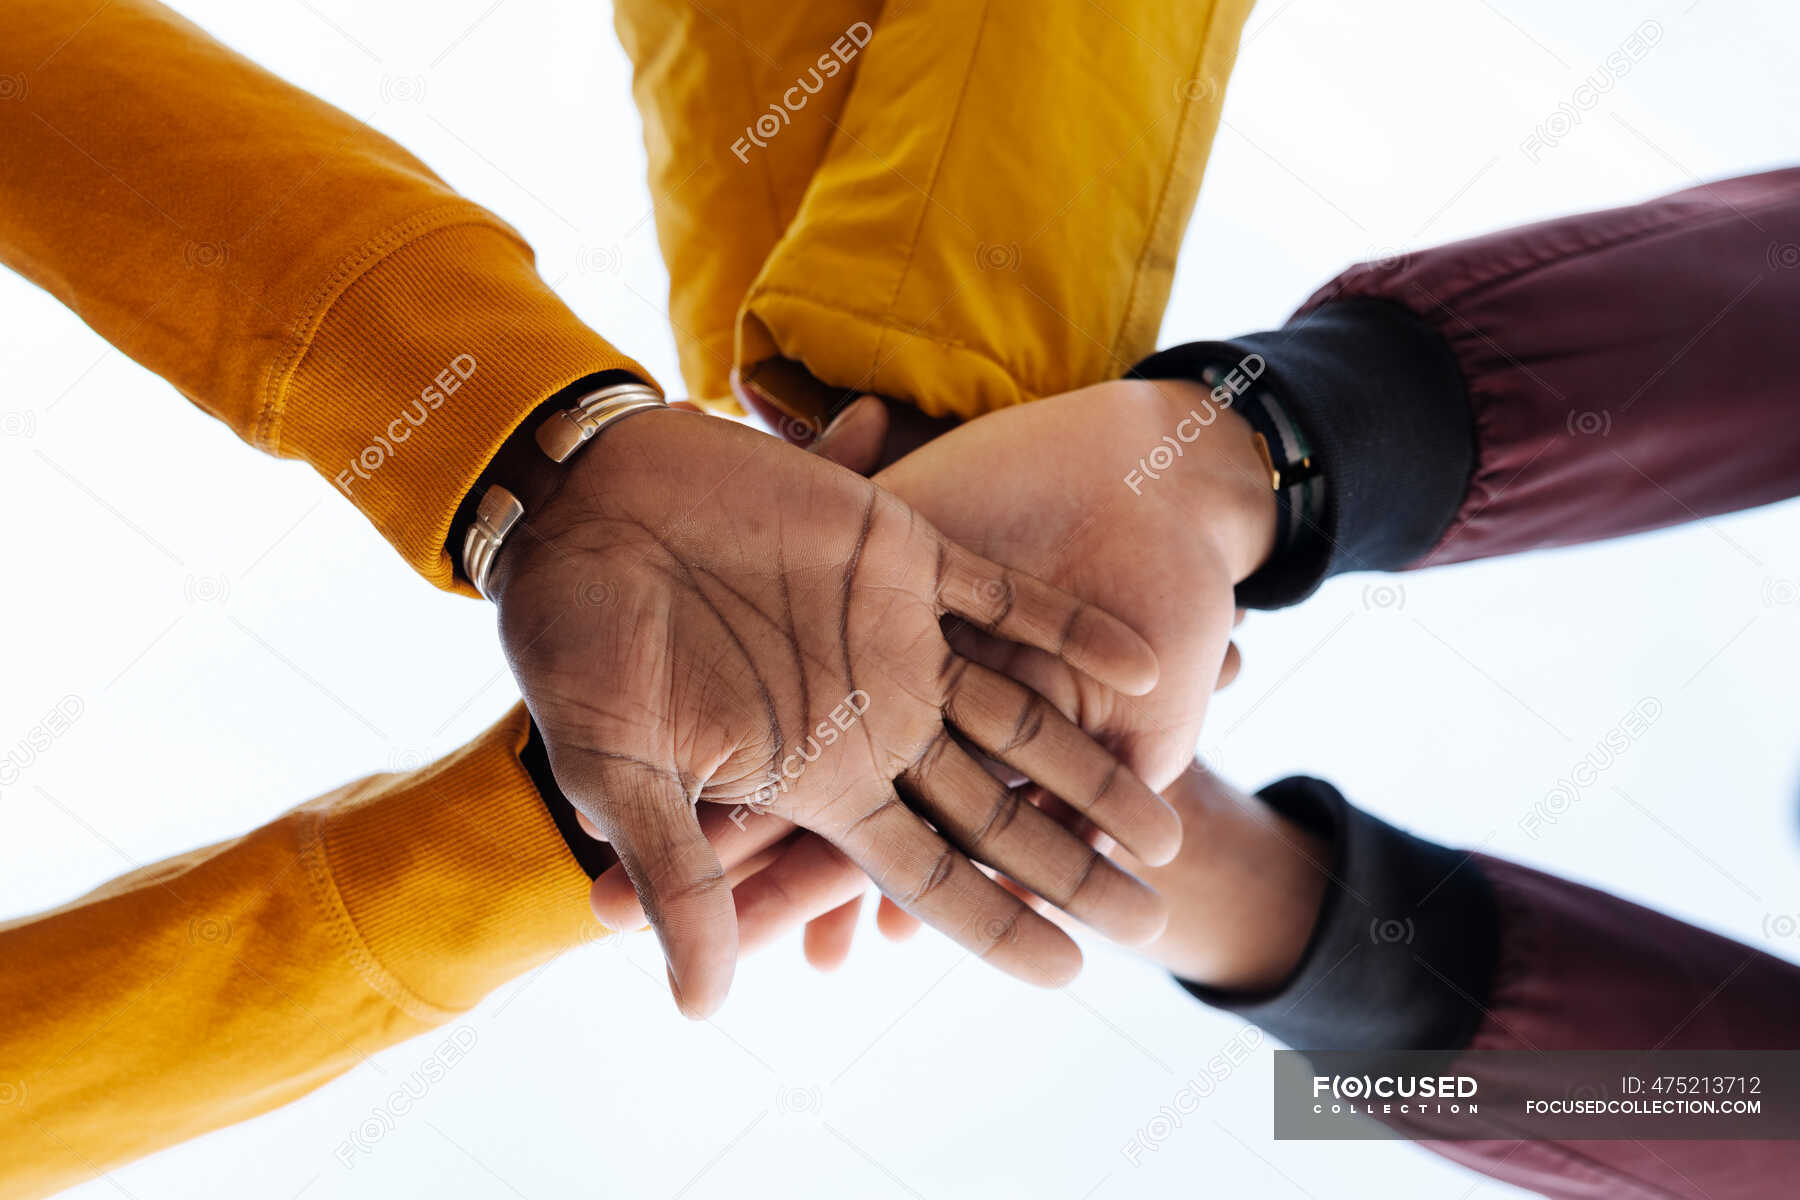 5 друзей пожали друг другу руки сколько